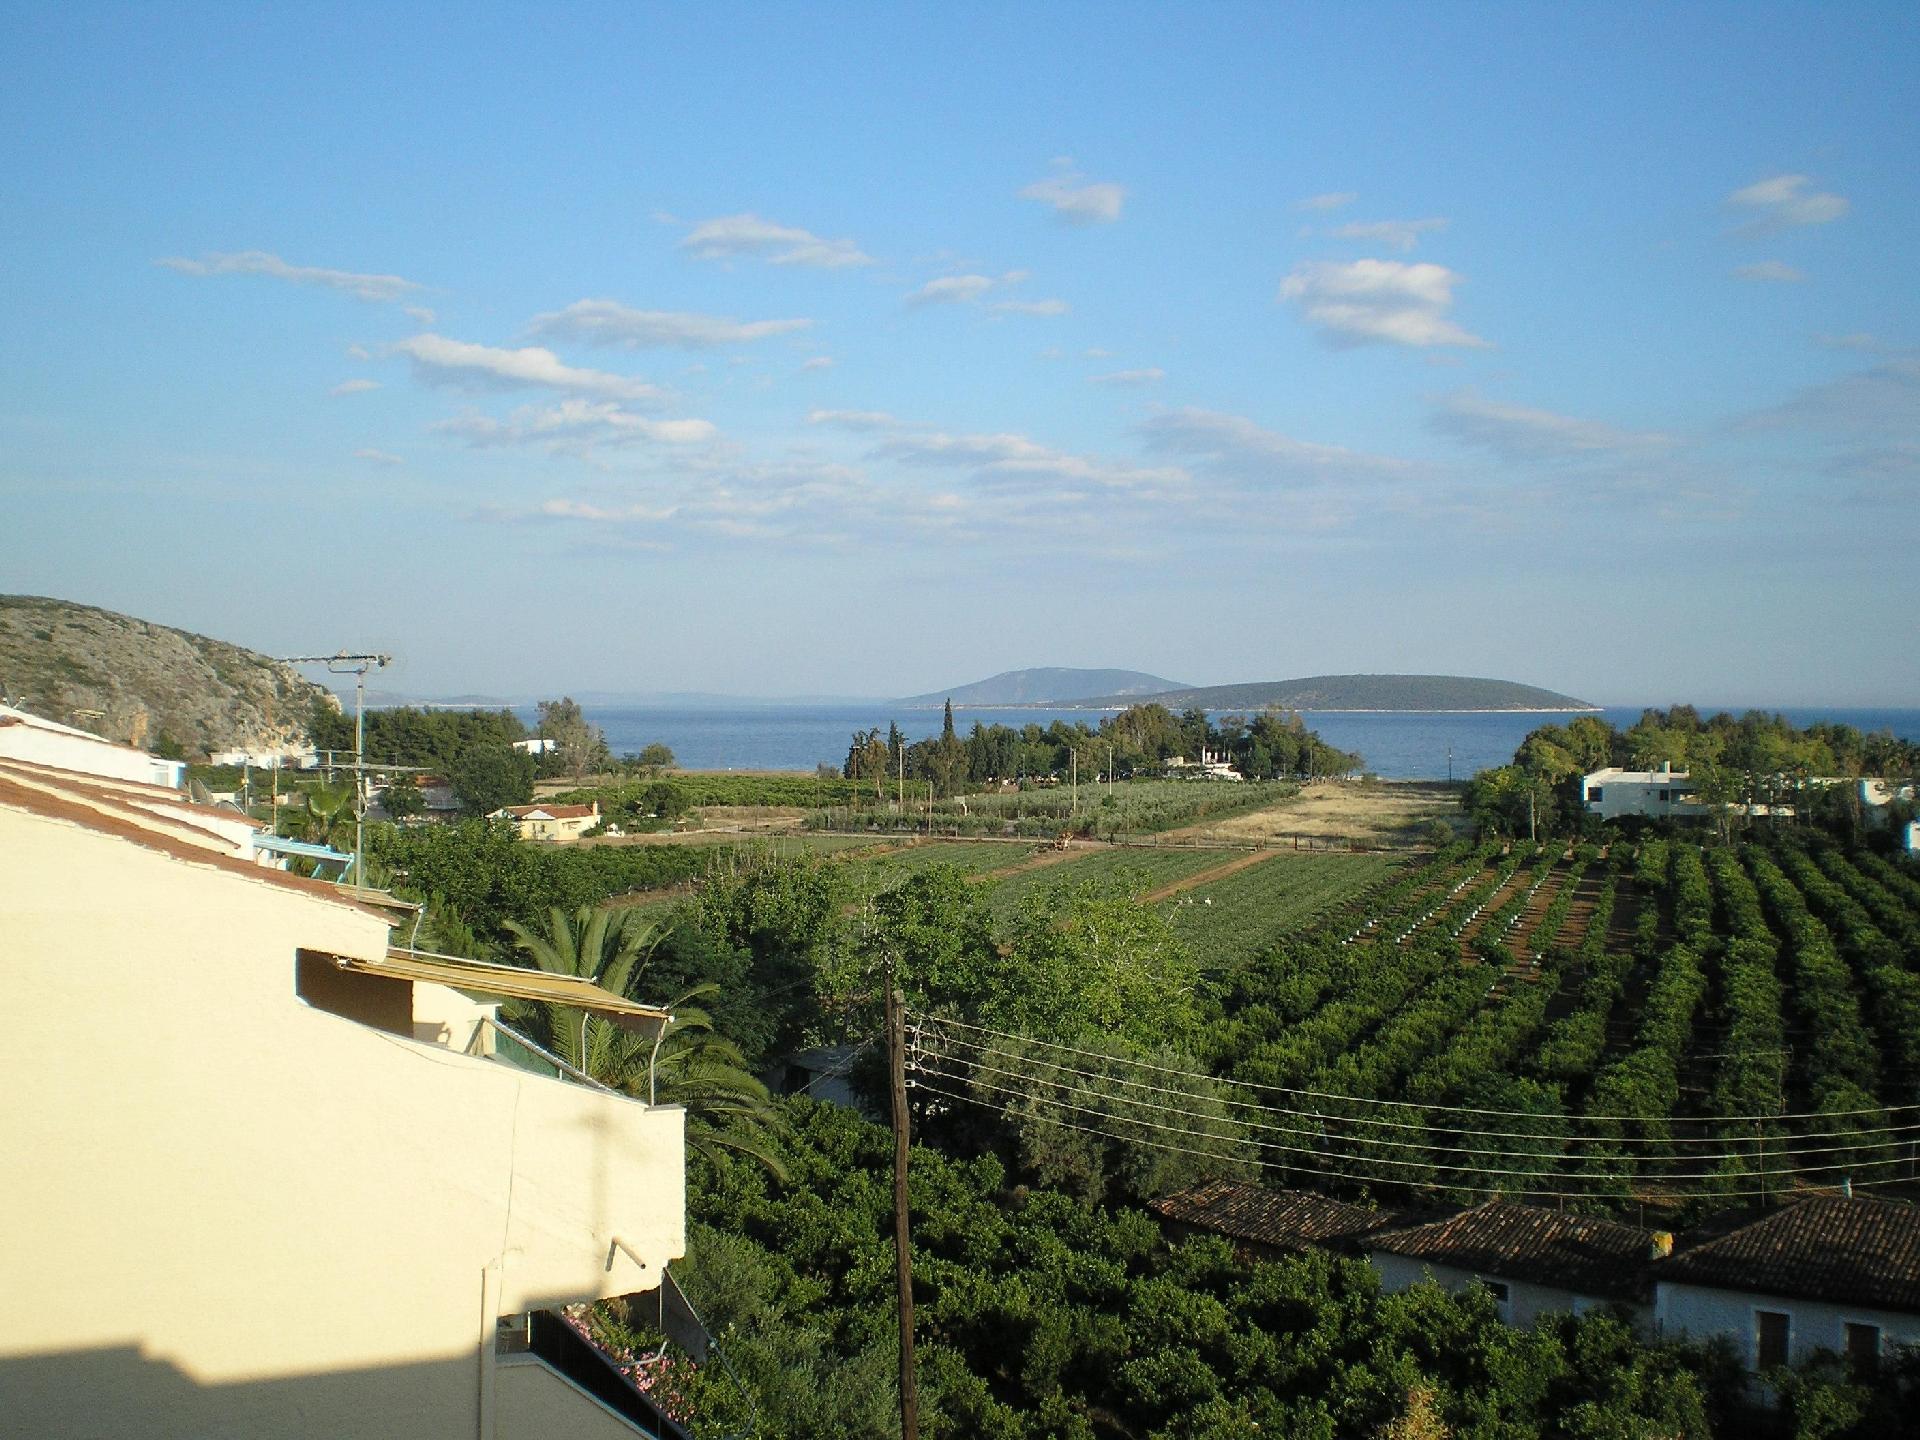  Ferienwohnung mit geräumigen Balkon und idea  in Griechenland